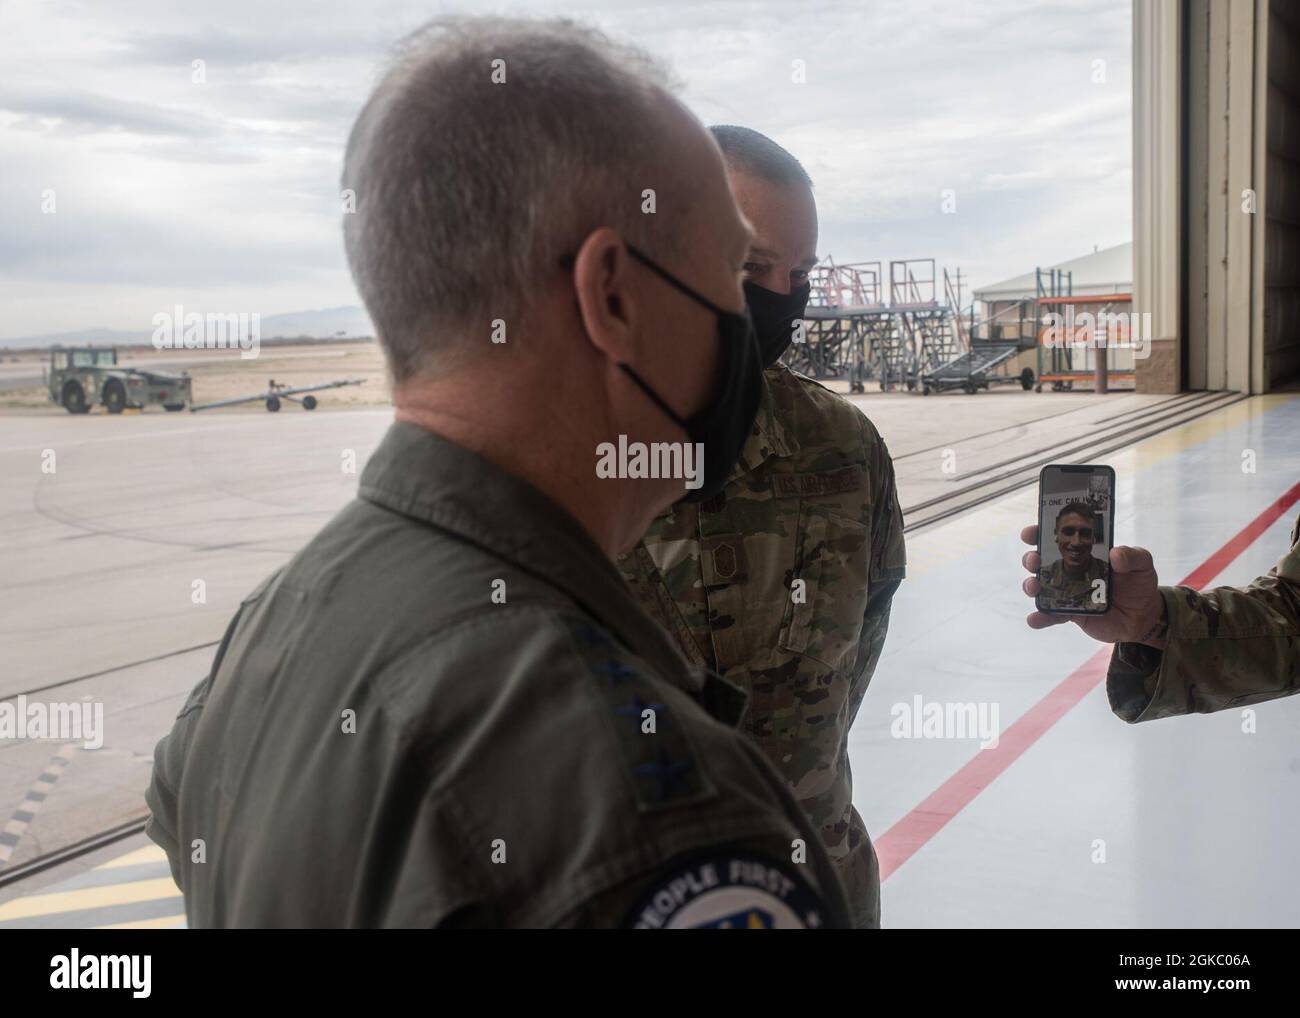 El General de la Fuerza Aérea de los Estados Unidos, Mark Kelly, comandante del Comando de Combate Aéreo, habla con el Maestro Sgt. Justin Bauer en la Base de la Fuerza Aérea Davis-Monthan, Arizona, 4 de marzo de 2021. Kelly acuñó a Bauer, el ganador del concurso de tanques de chispa de la Fuerza Aérea de 2021, prácticamente por su innovación en la reparación de ruedas C-130. Foto de stock